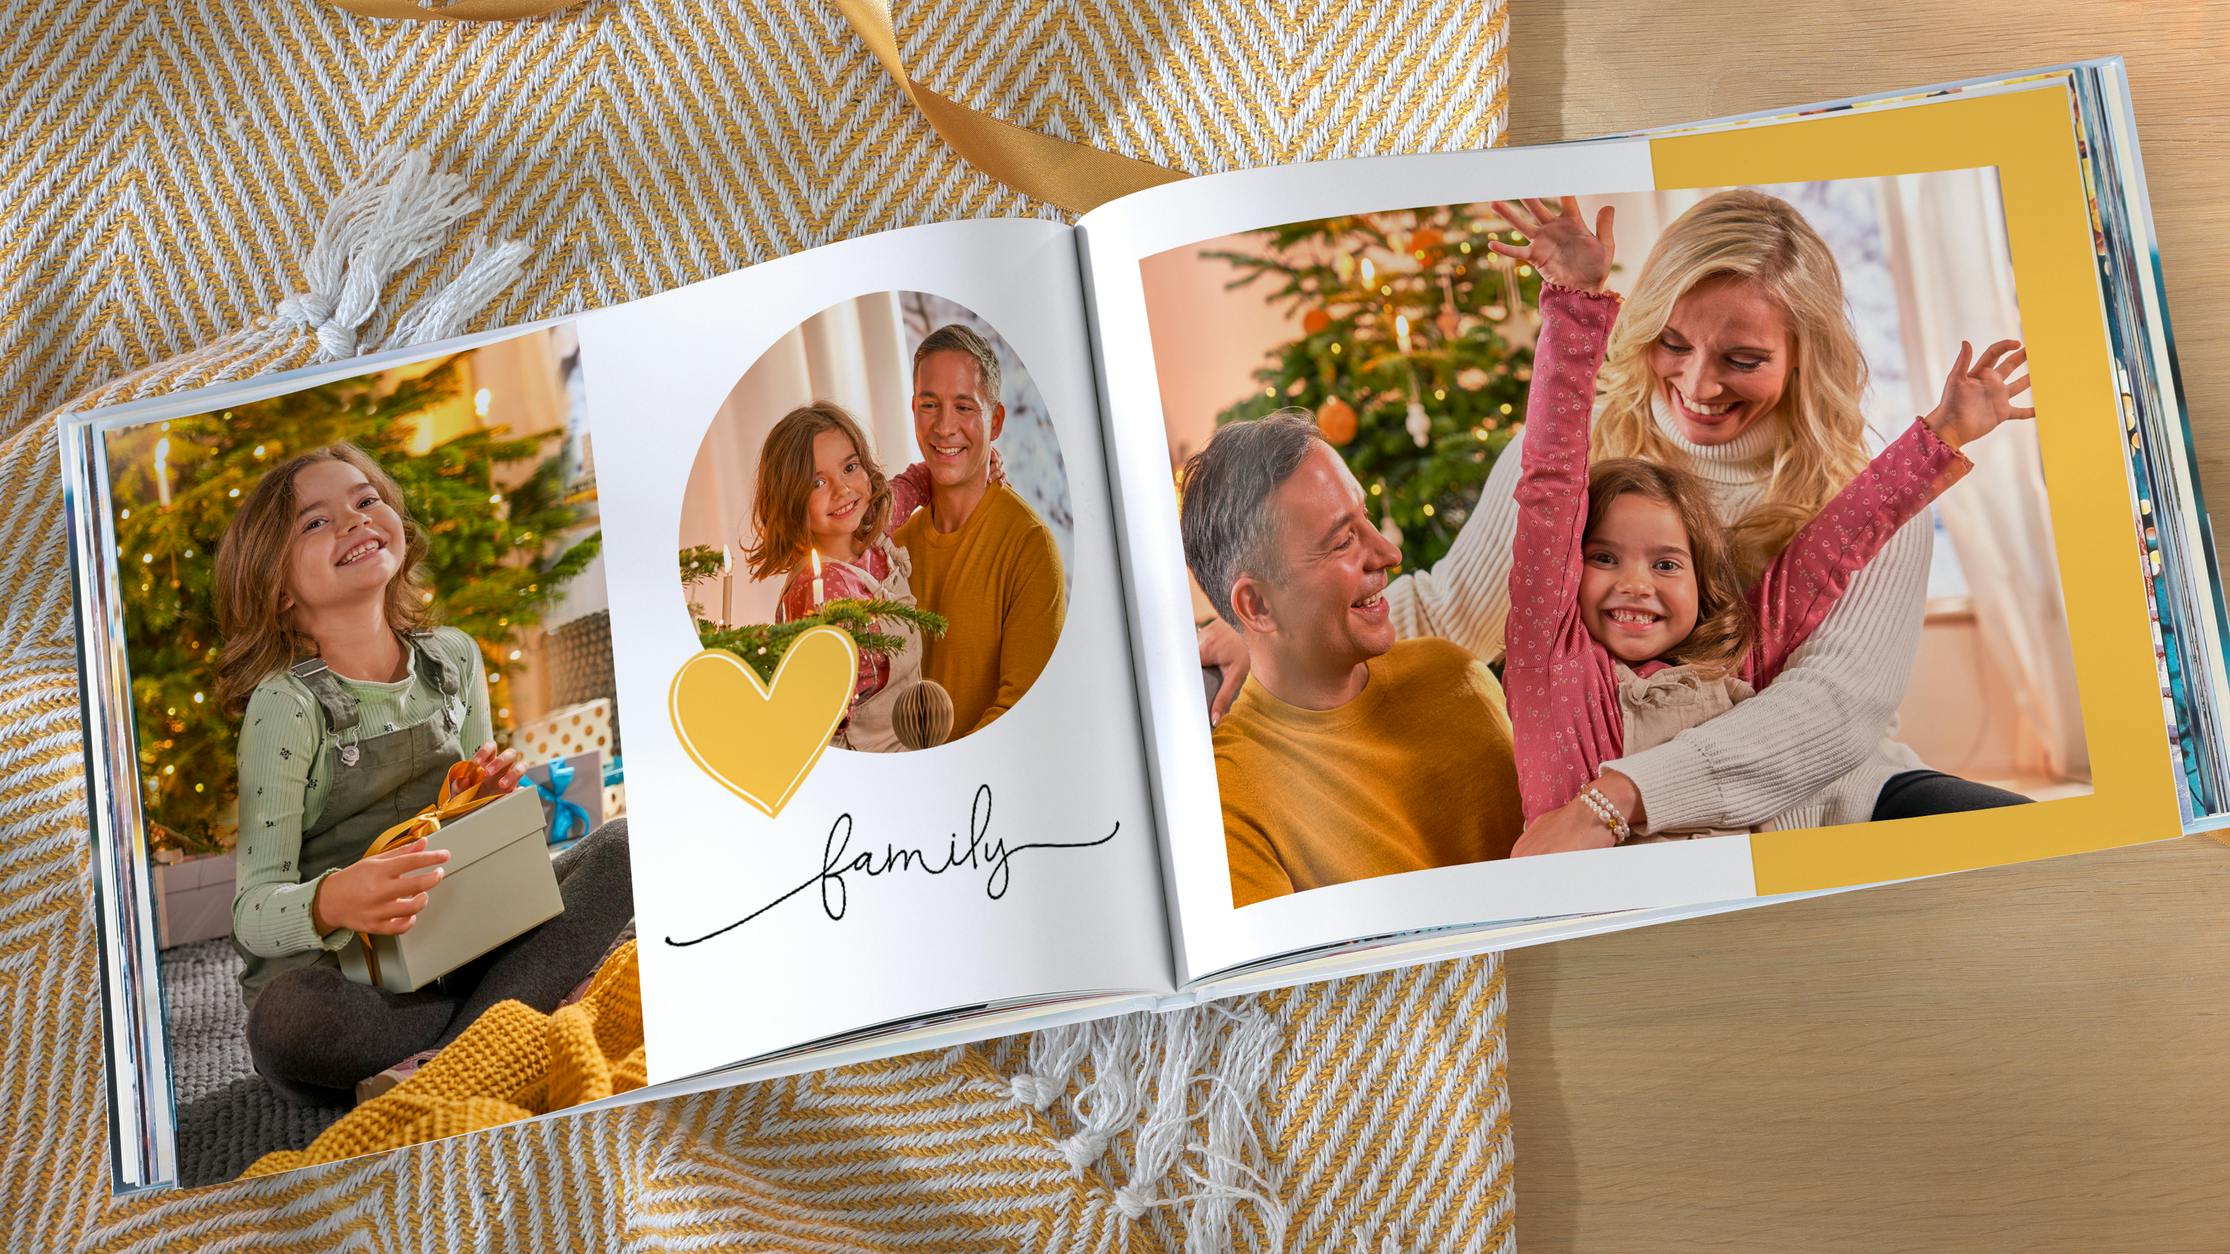 Gepersonaliseerd fotoalbum met familiefoto's in kerstsfeer